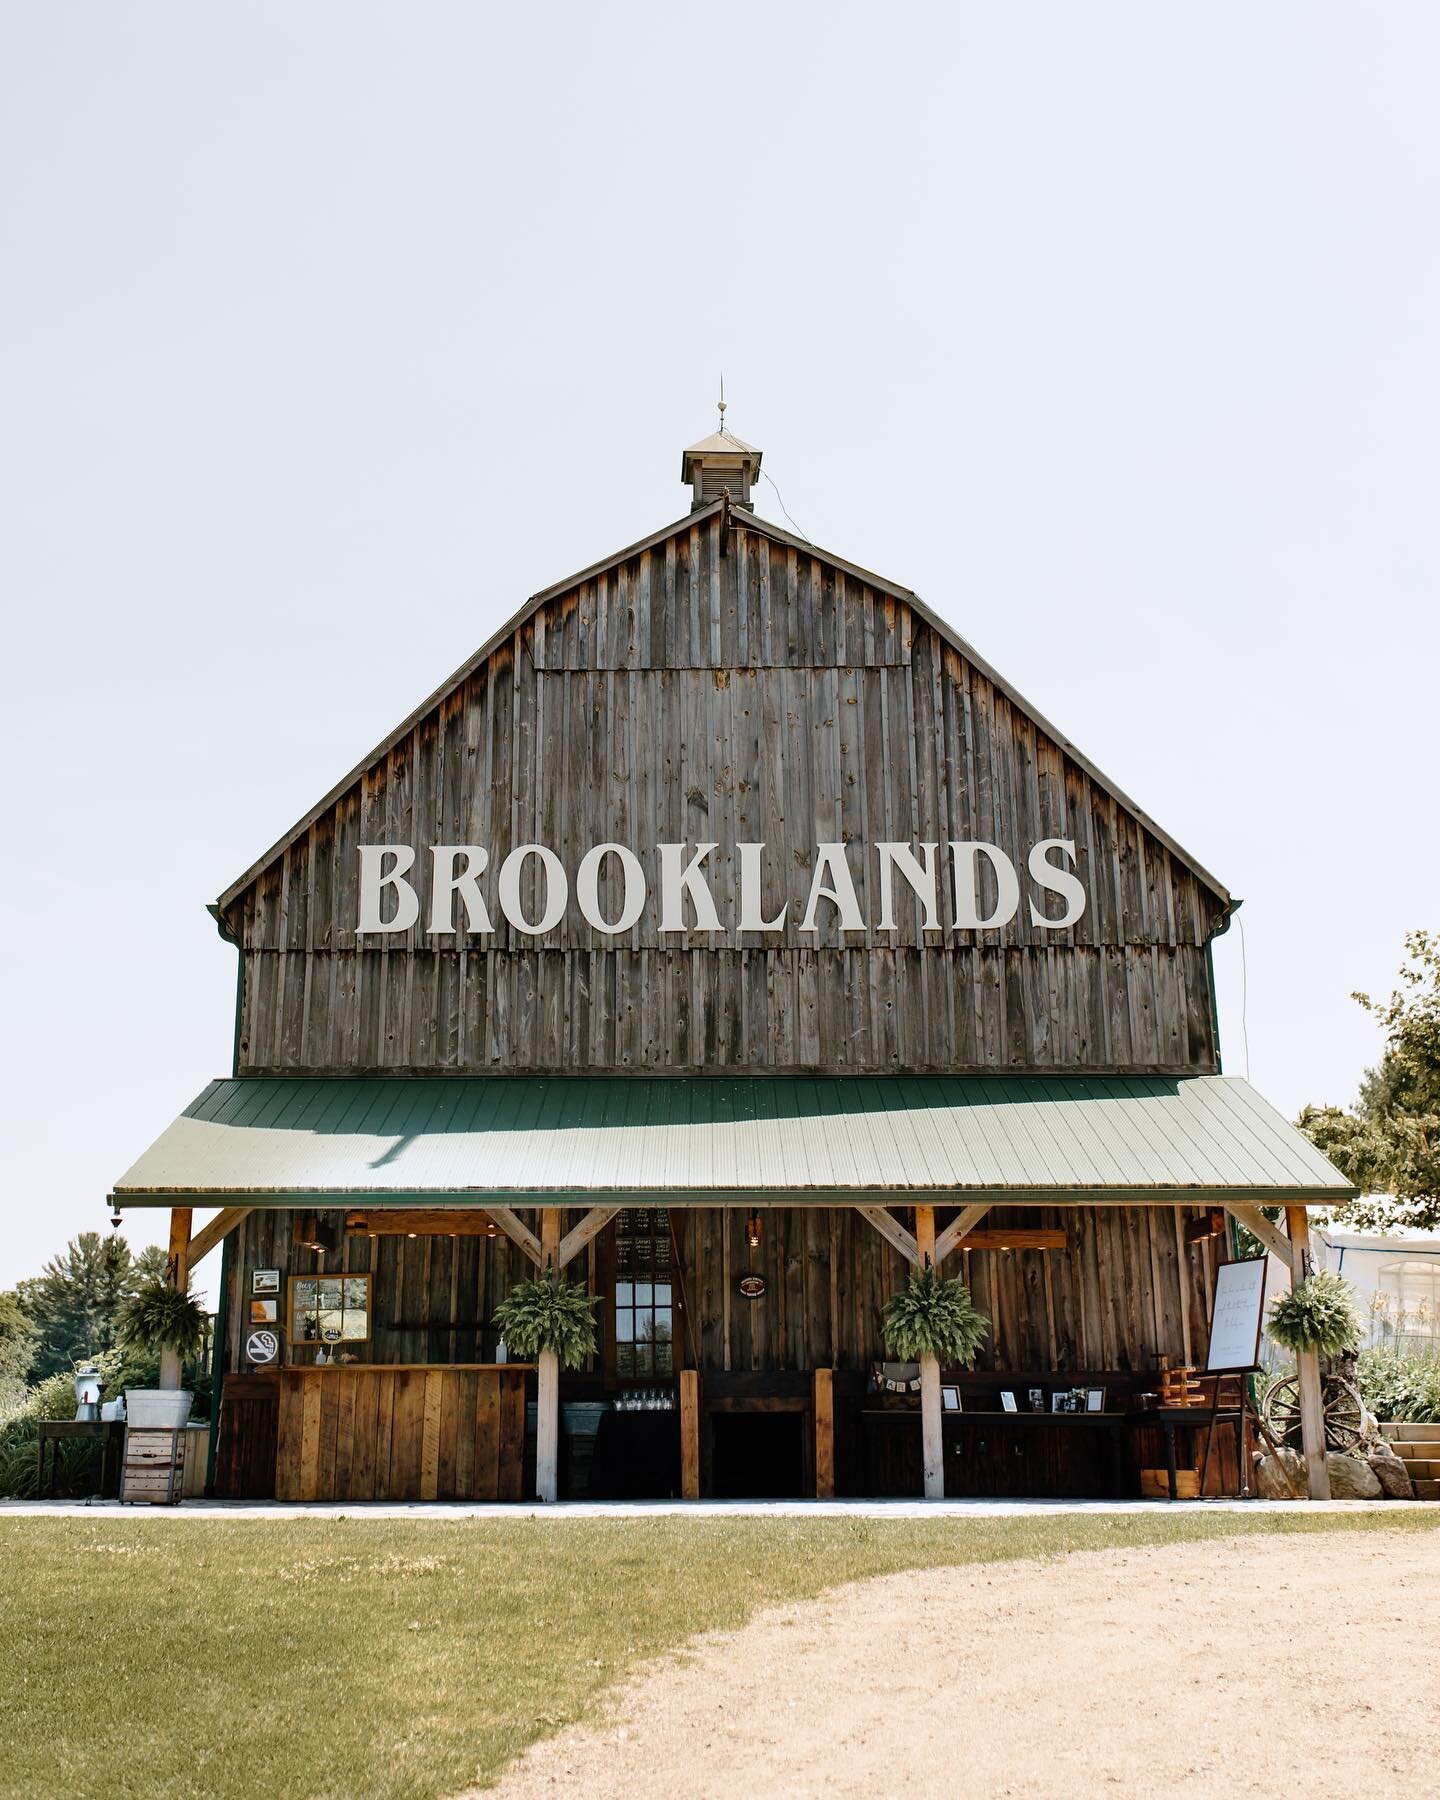 A Brooklands Farm wedding. 
&bull;
&bull;
&bull;
On assignment for @evelynbarkey